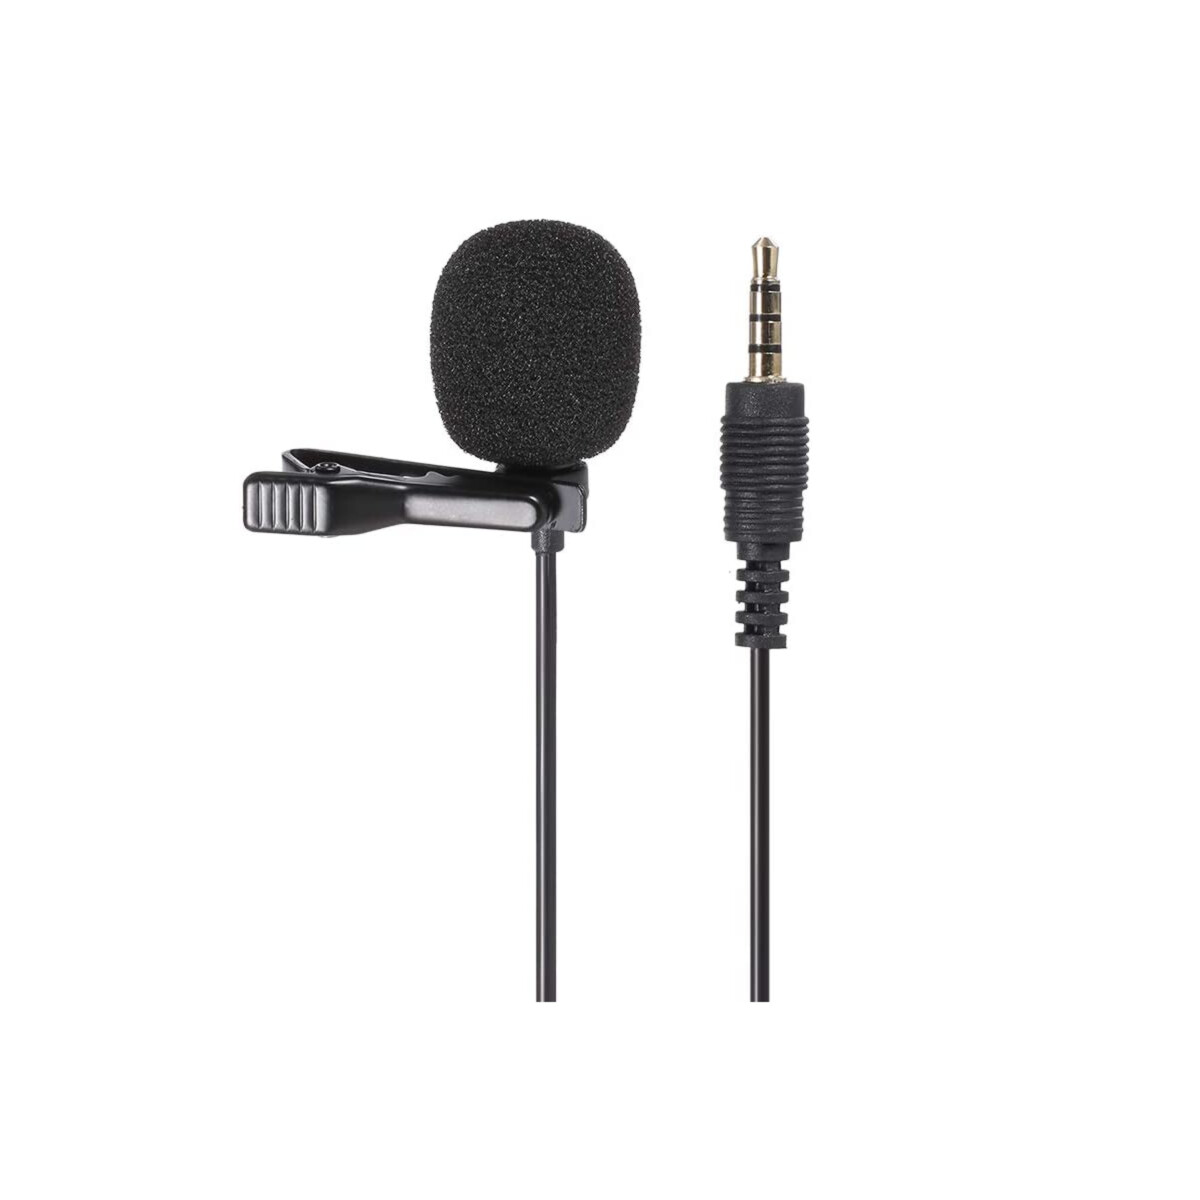 Ajcoflt GL-119 3.5AUX Lavalier Micrófono Omnidireccional Condensador 